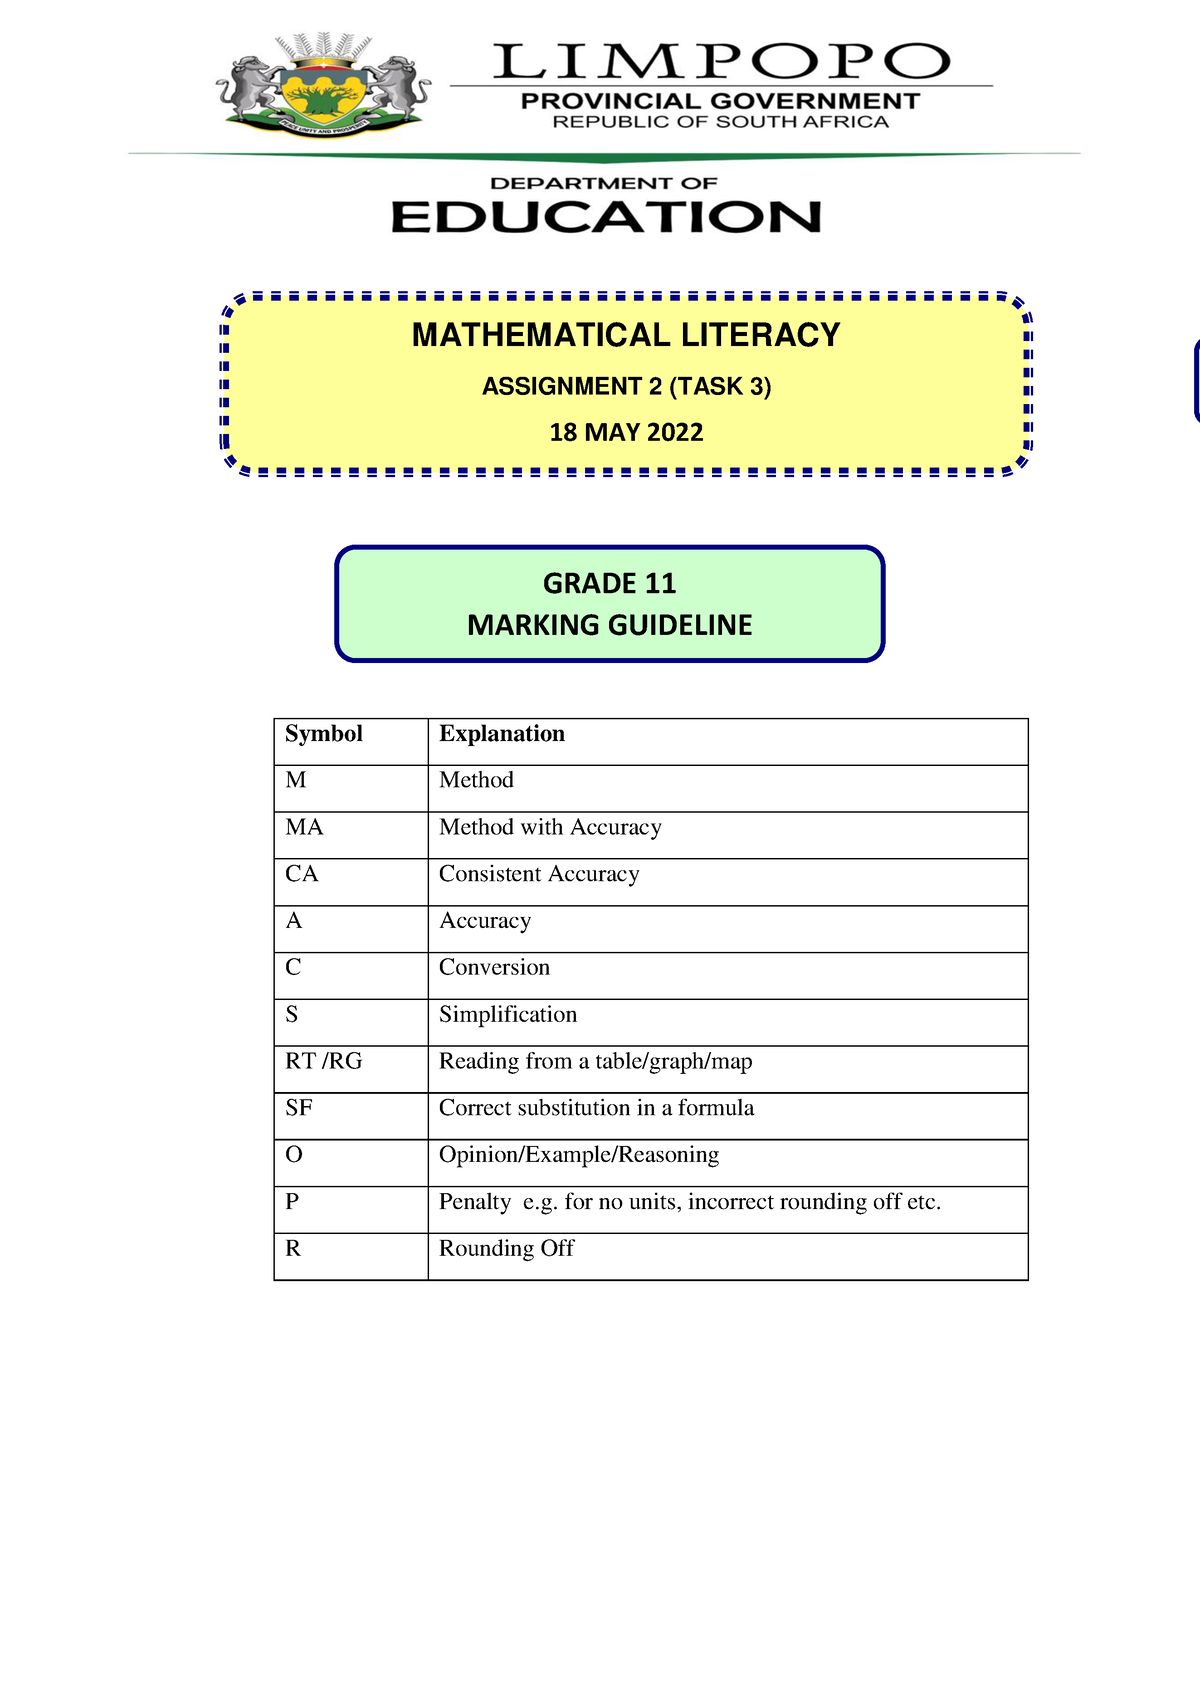 assignment grade 11 mathematical literacy